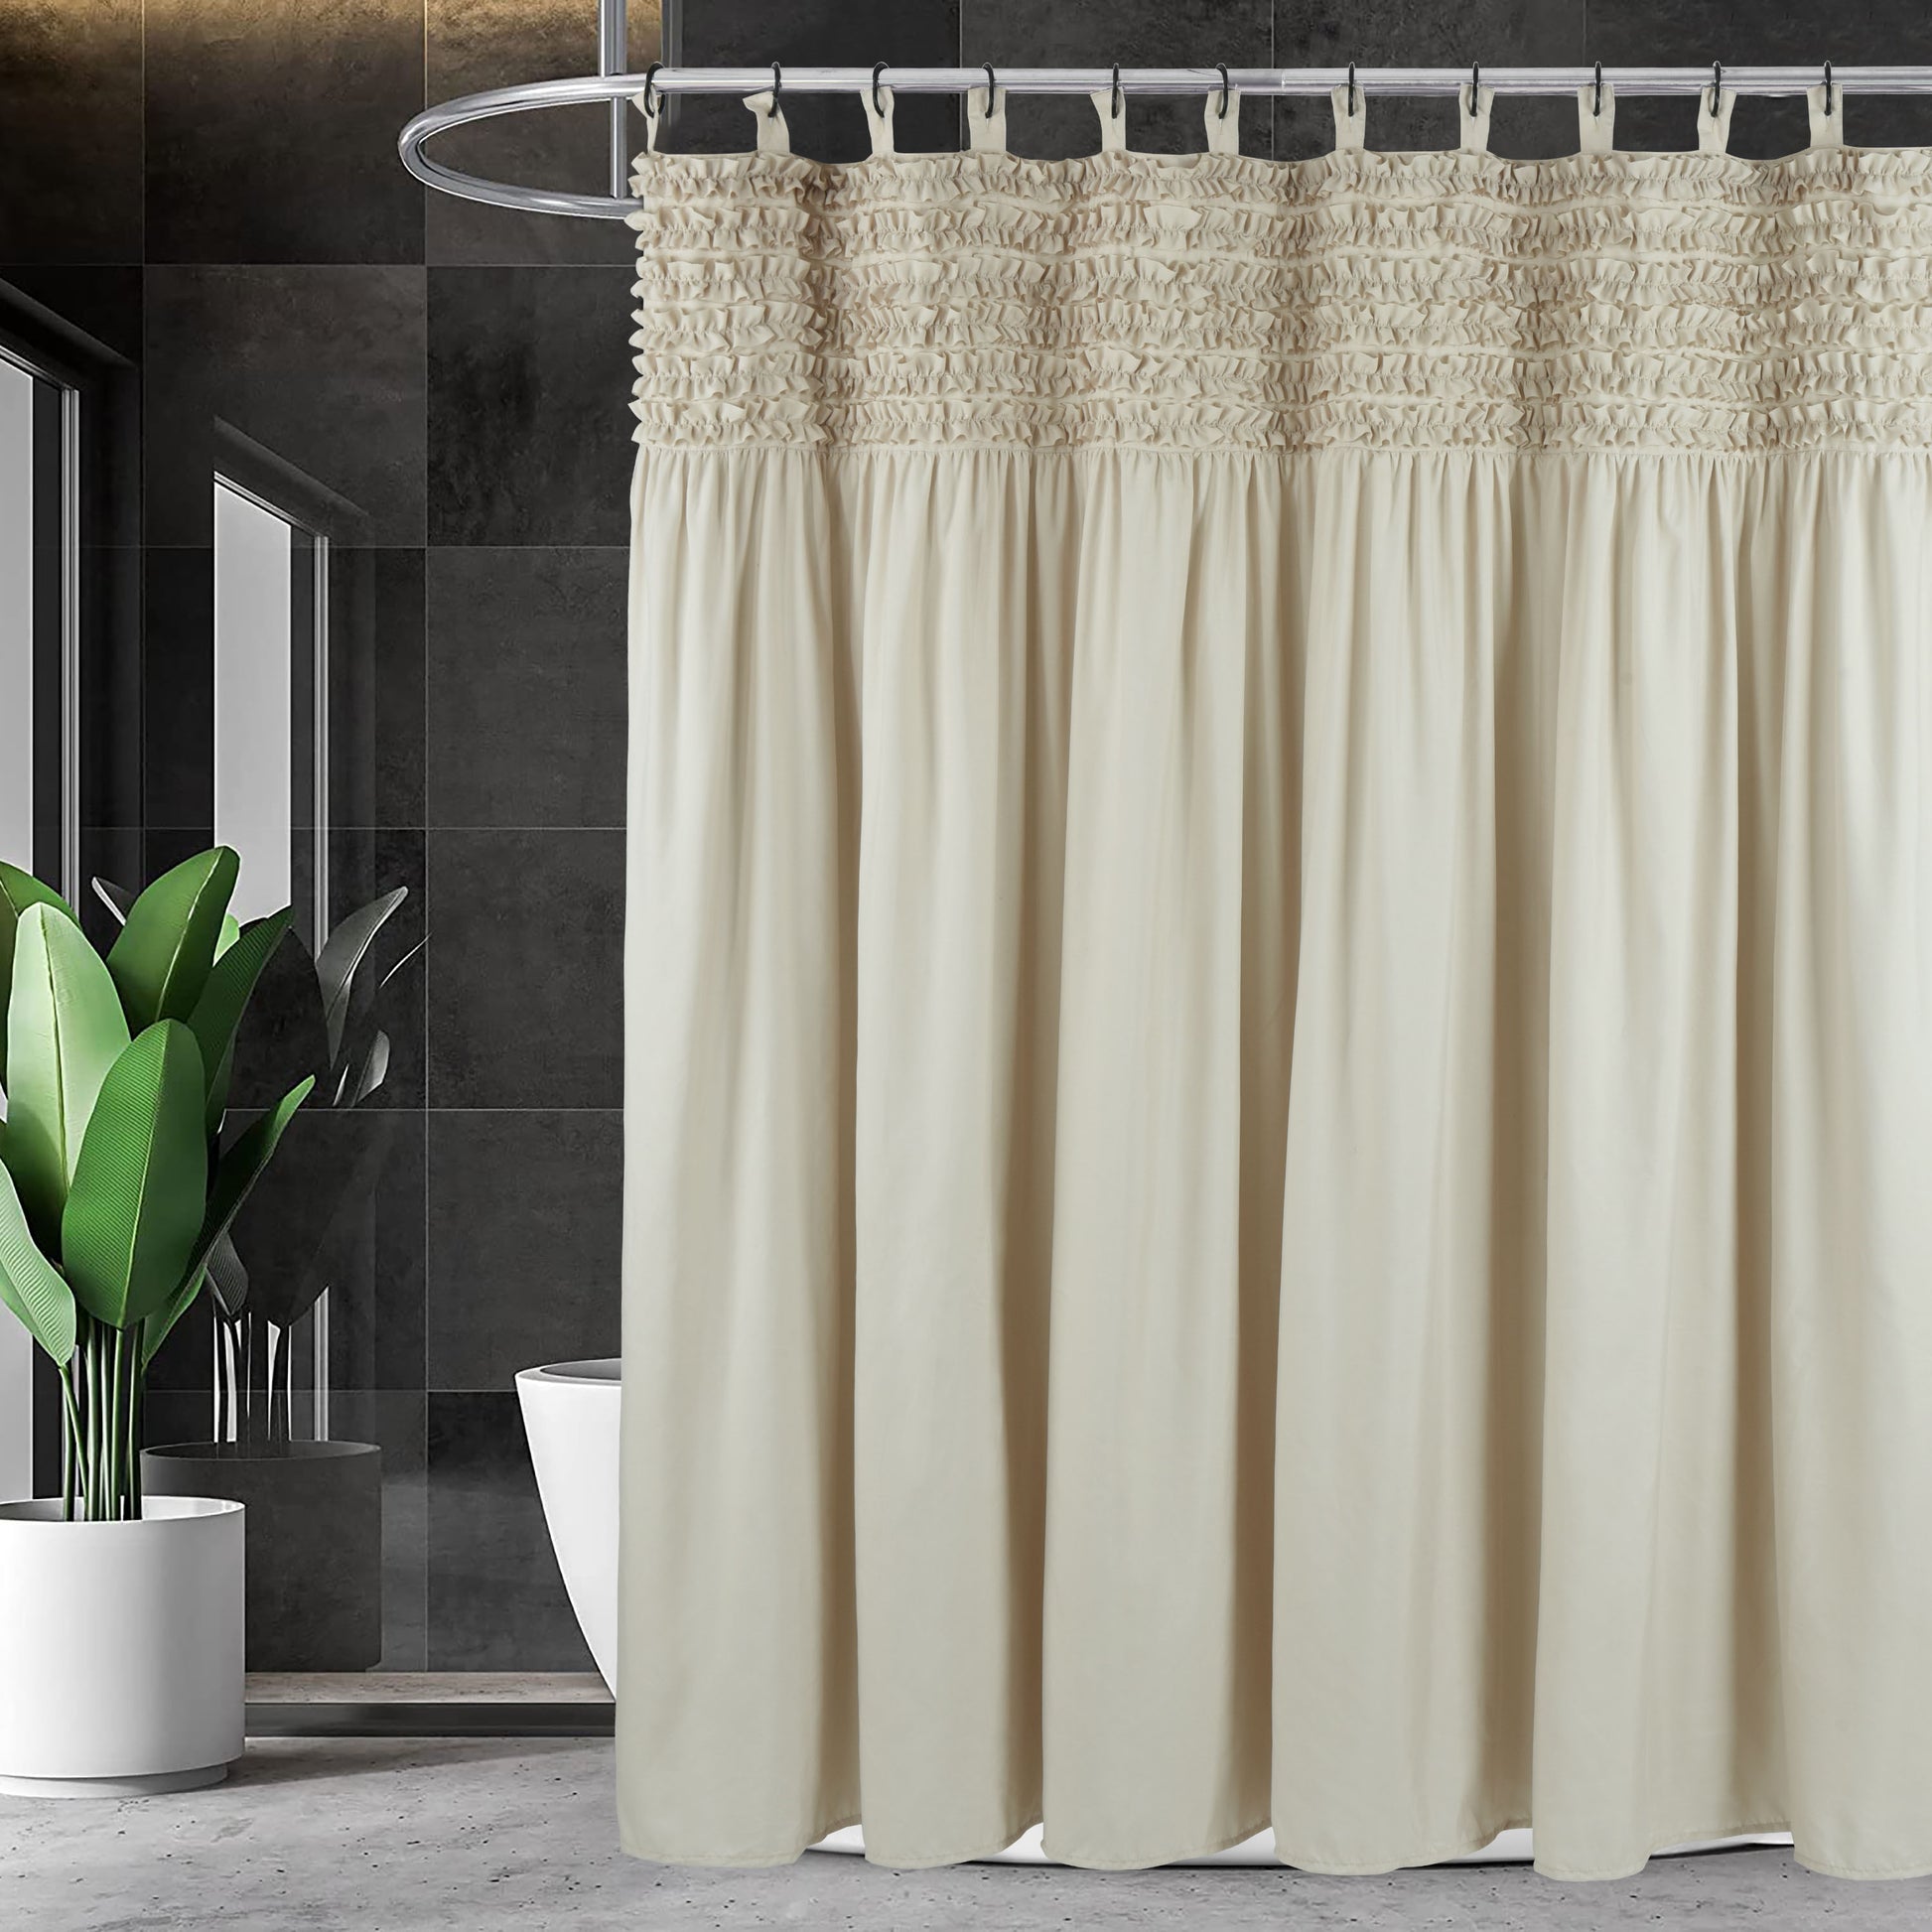 Farmhouse Ruffle Shower Curtain Girly Fabric Bathroom Curtain 72''x72'